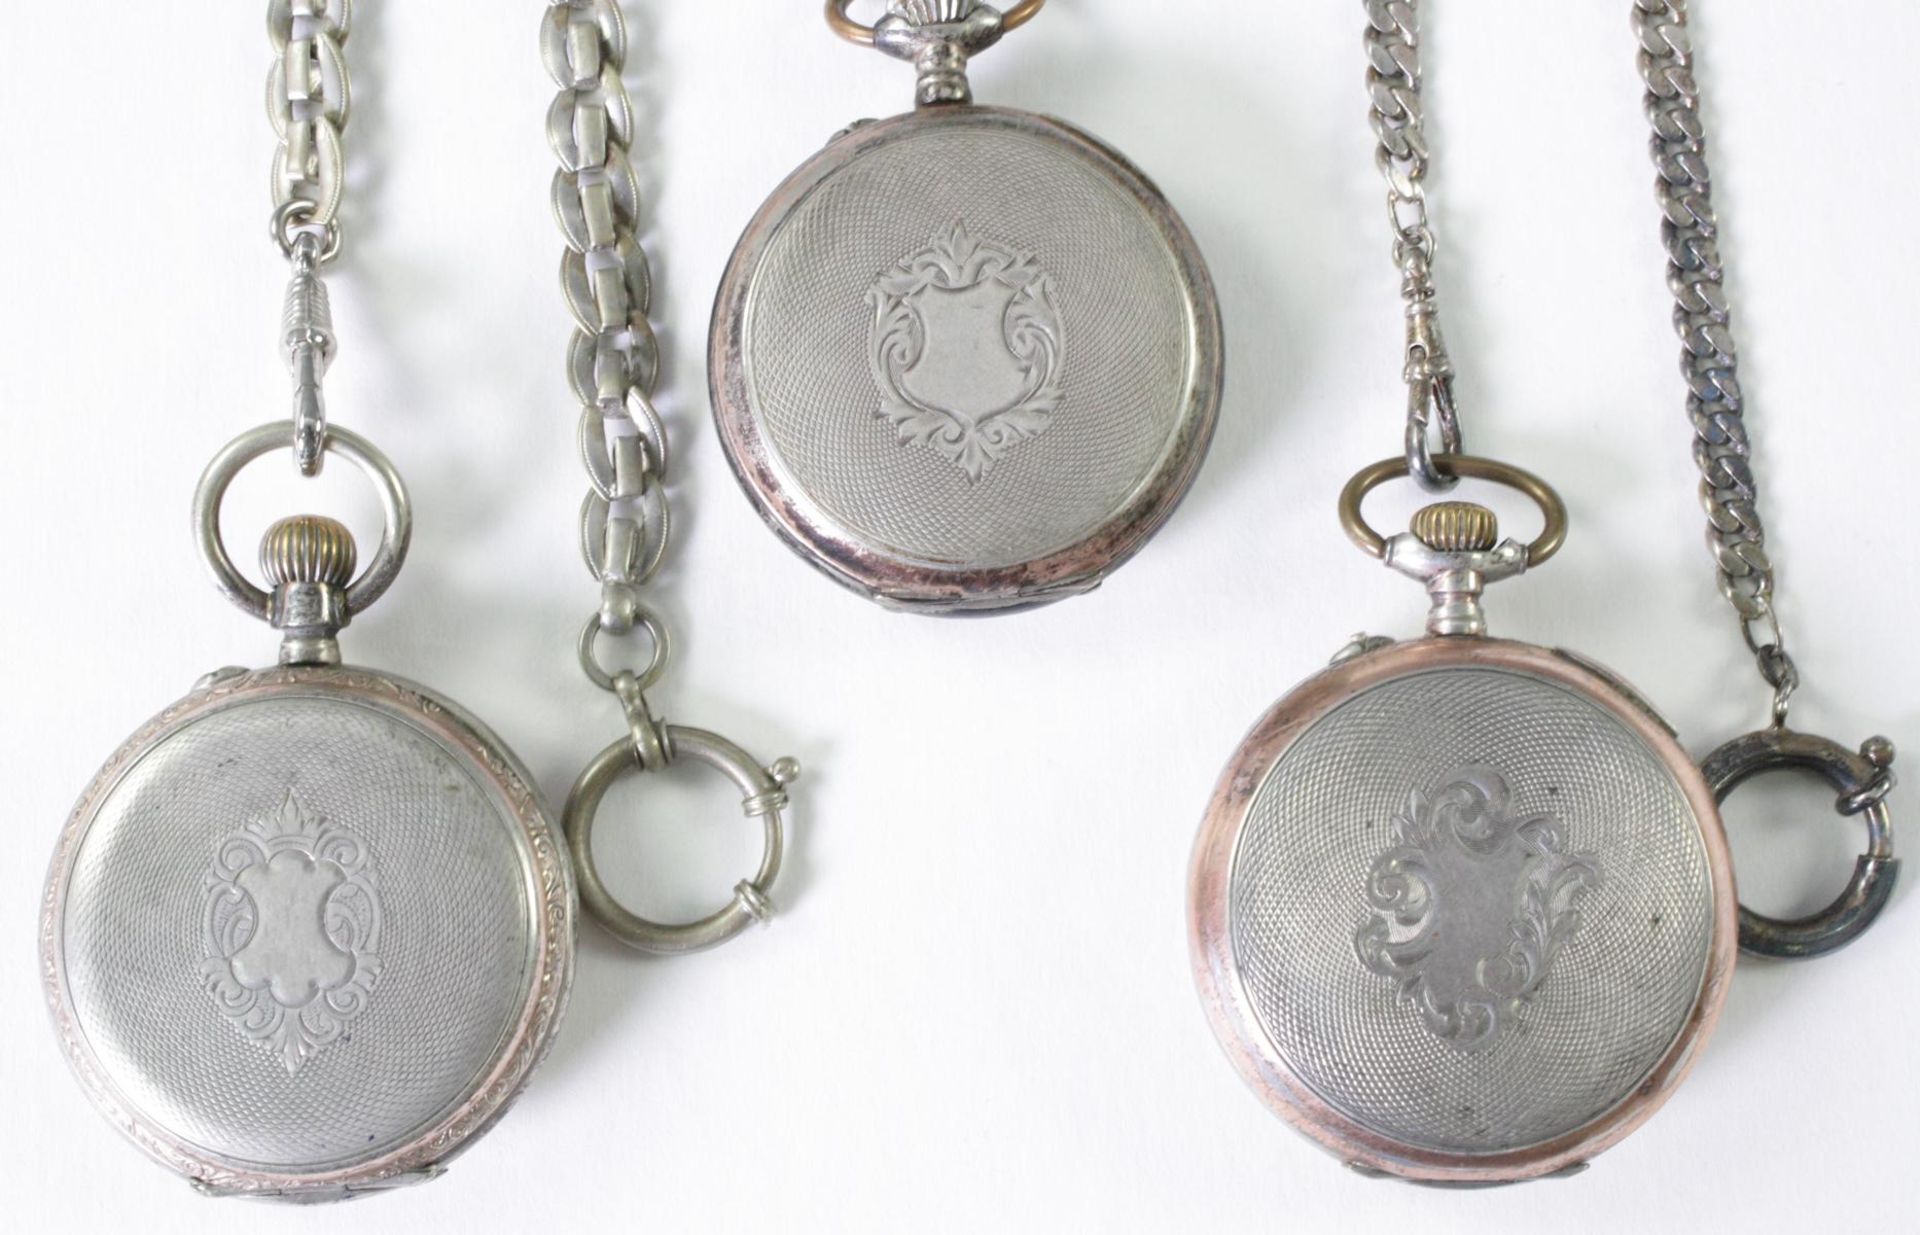 Drei antike Taschenuhren um 1900 aus Silber - Bild 3 aus 5